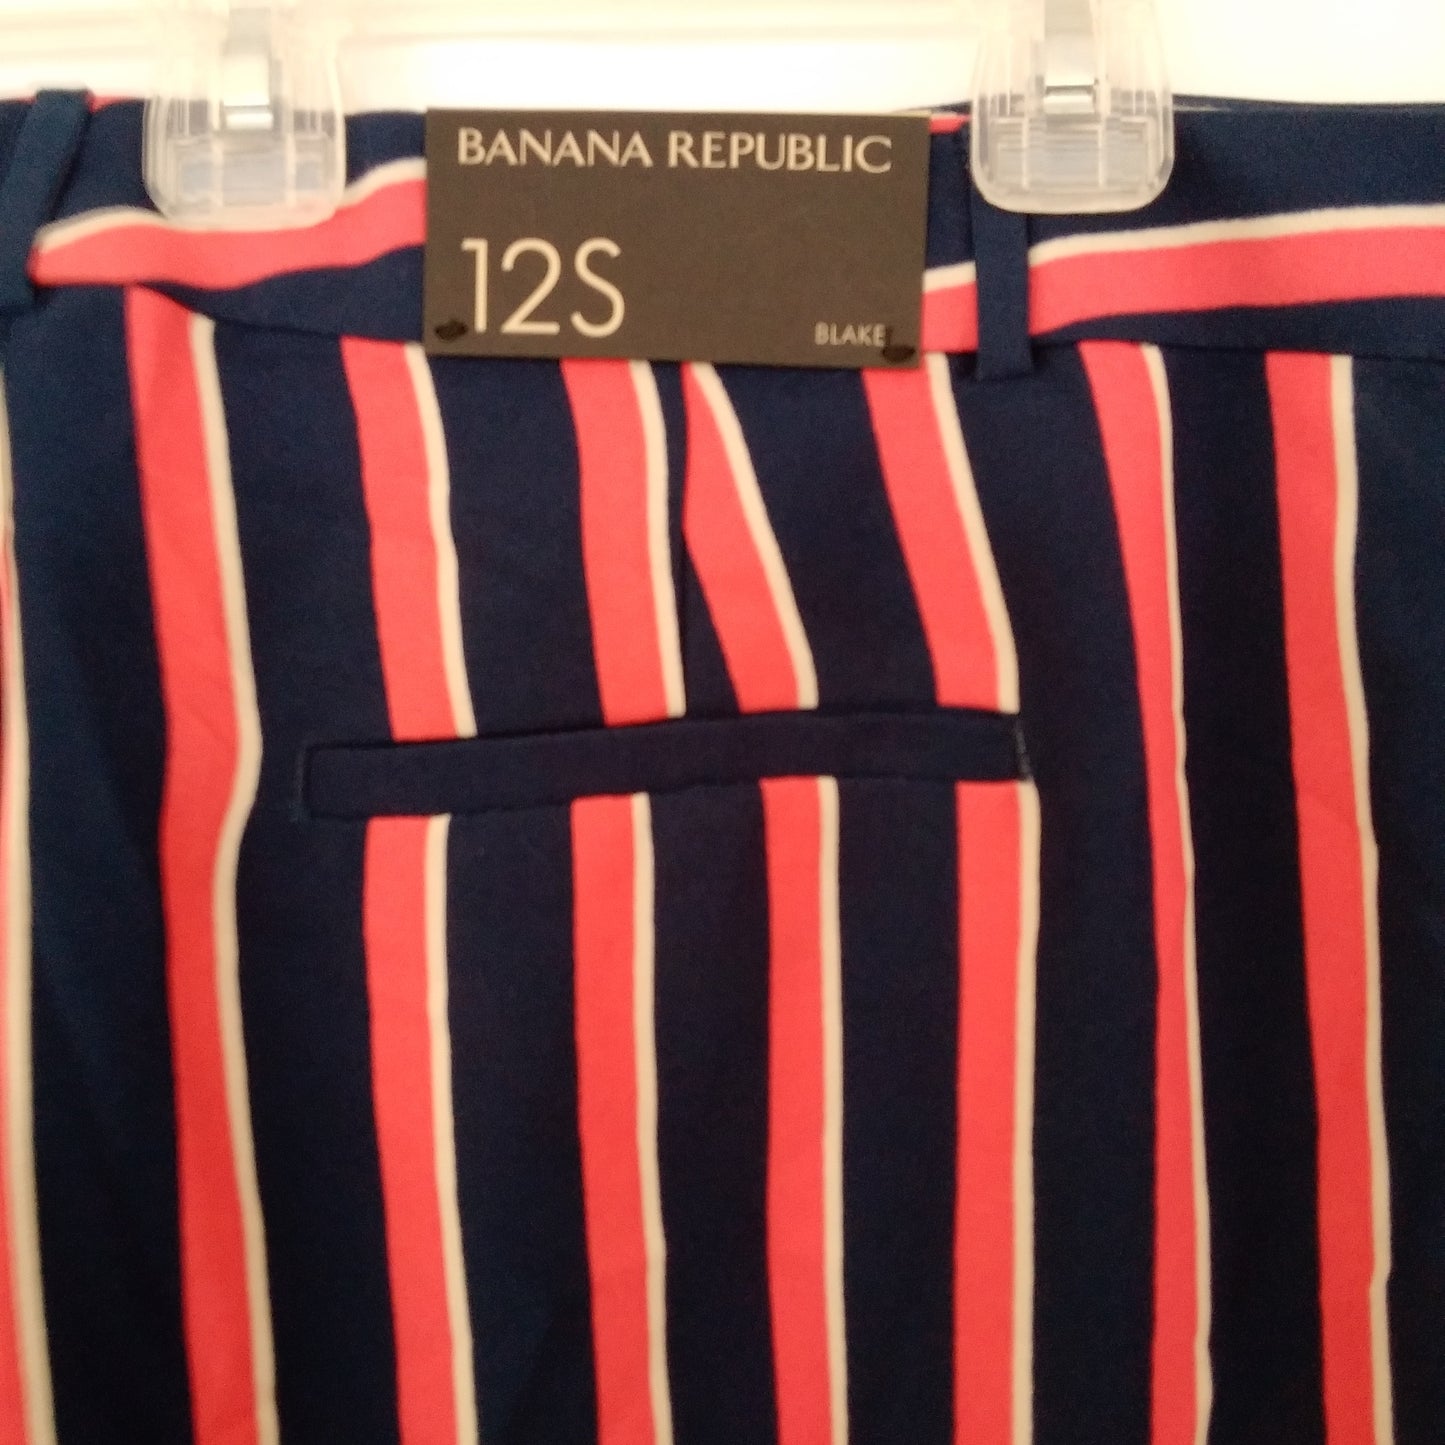 NWT - Banana Republic Red/White/Blue Striped Blake Wide Leg Pants - Size: 12S